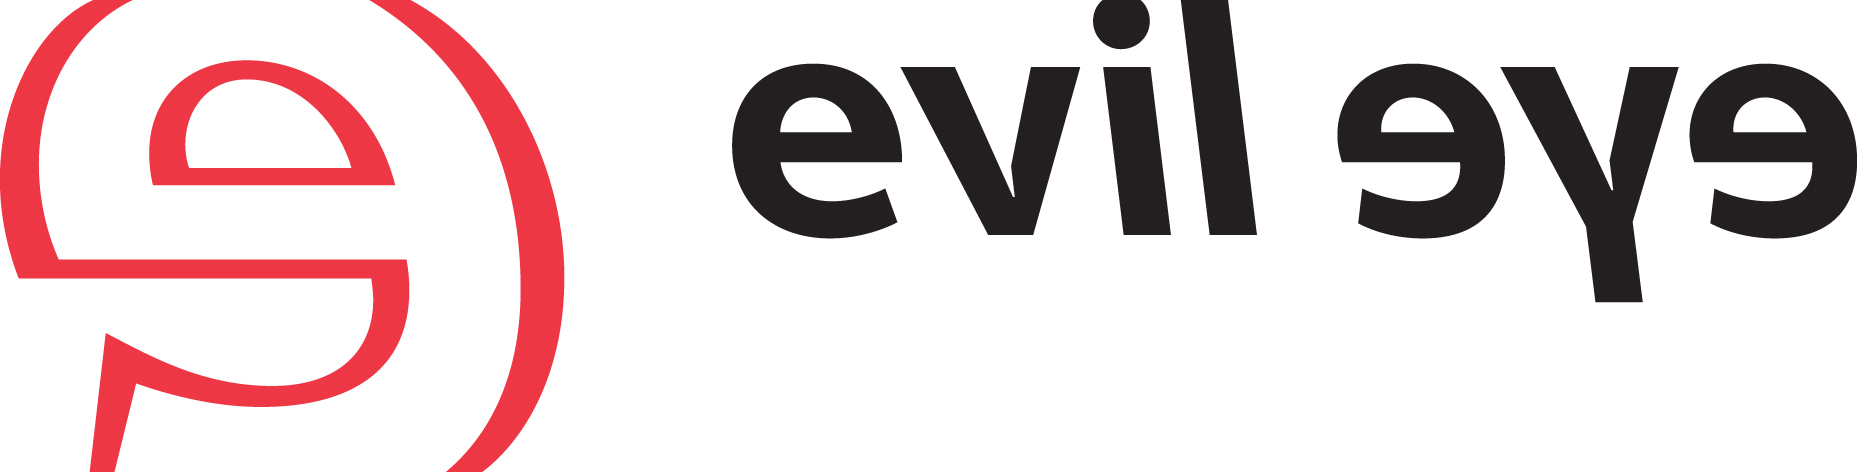 evil eye – Silhouette International launcht neue Premium-Sportbrillenmarke